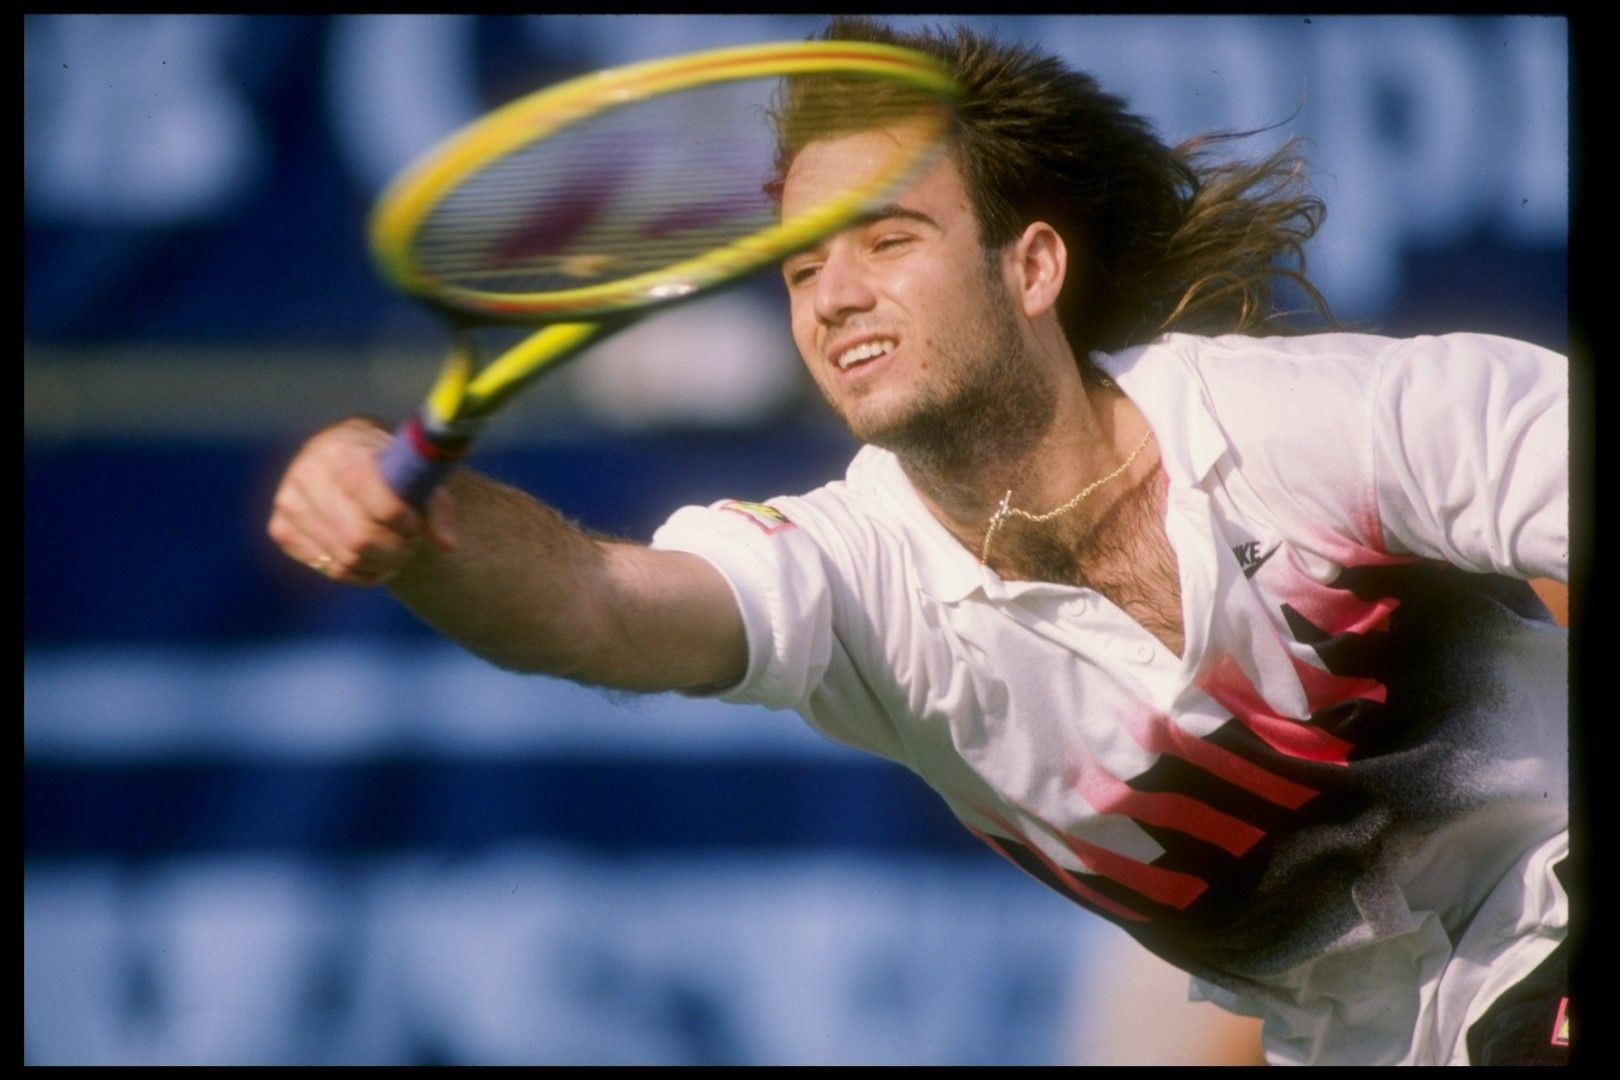 През есента на 1996 г. Андре Агаси бе една от големите спортни икони в света. Изключителен тенисист, който току-що бе спечелил Олимпийската титла в Атланта, както и няколко "Мастърс" турнира през годината, въпреки че бе загубил позицията си на №1 в ранглистата за сметка на Пийт Сампрас. Следващата година обаче бе повратна... През 1997 г. Агаси почти не игра с травма в китката, а даде и положителна допинг проба. Написа трогателно писмо до ATP, обяснявайки, че забраненото вещество е поставено в напитката му без негово знание. Пожален е, но по-късно в автобиография обяснява, че това е лъжа. Следват месеци, в които е пред отказване, има проблеми в личния живот и стига до 141-во място в ранглистата.